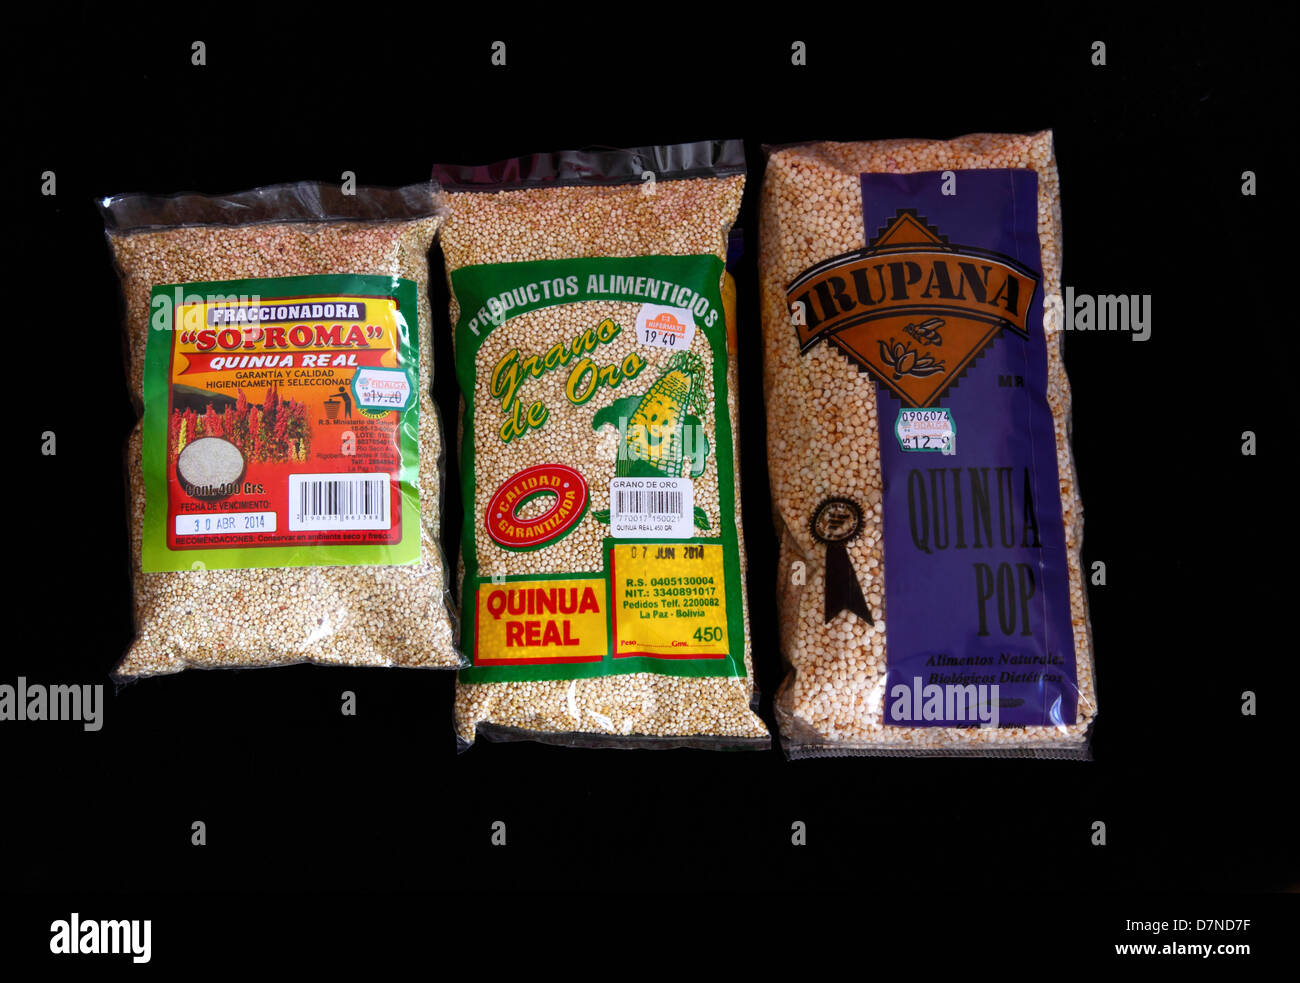 Sacchetti di materie royal quinoa (L, quinua real) e lavorato essiccato di quinoa (R) disponibile in Bolivia , isolato su sfondo nero Foto Stock